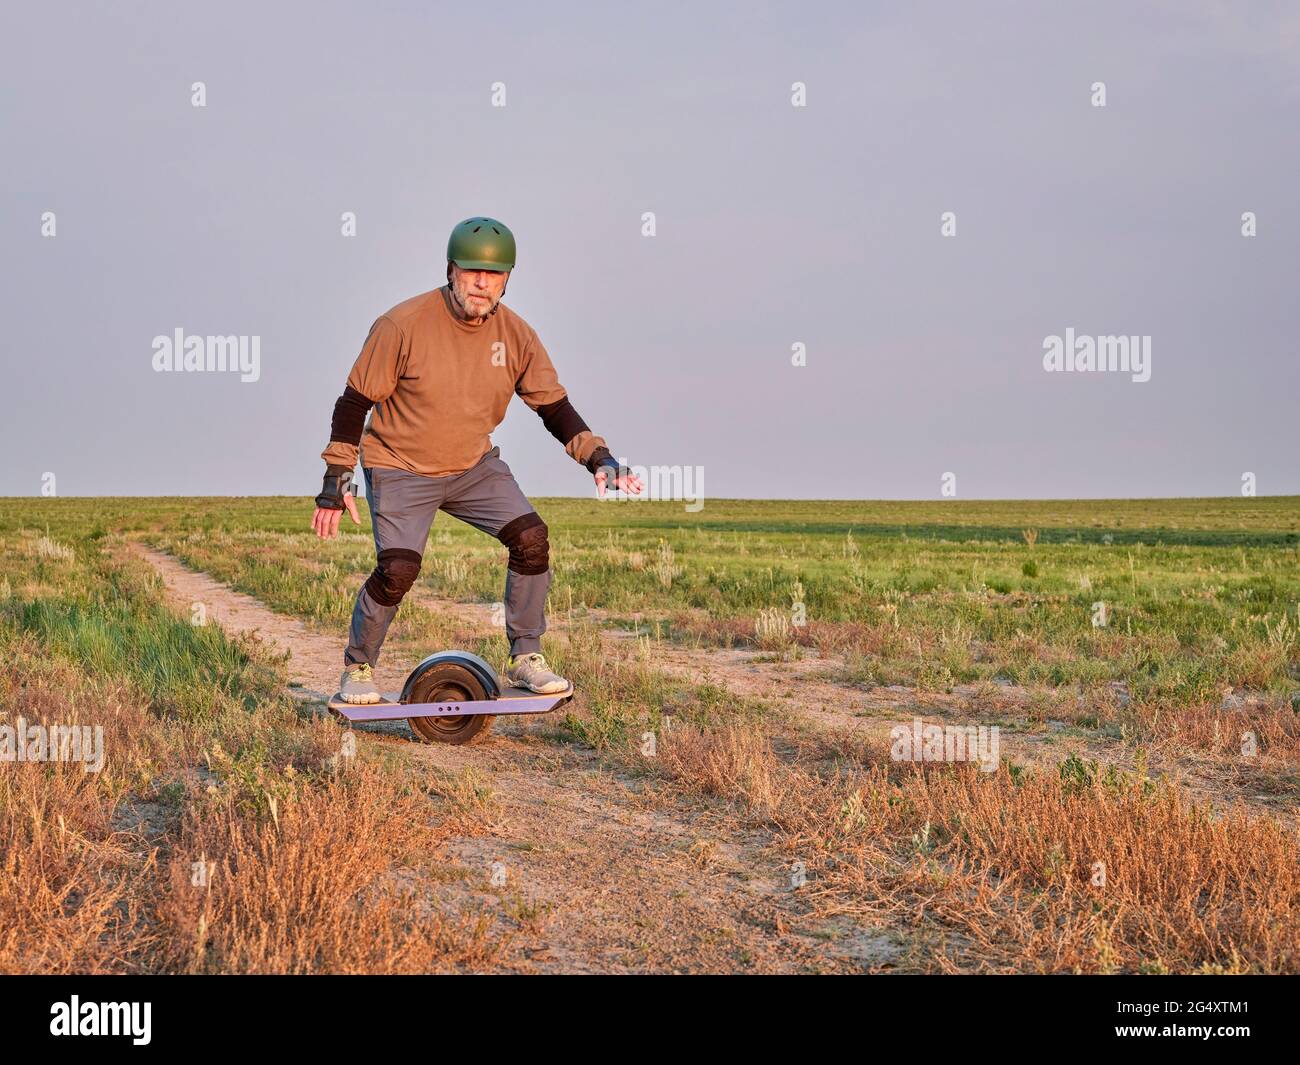 promenade au lever du soleil sur une prairie, un homme âgé d'âge mûr est à cheval sur un skateboard électrique à une roue sur une route de terre Banque D'Images